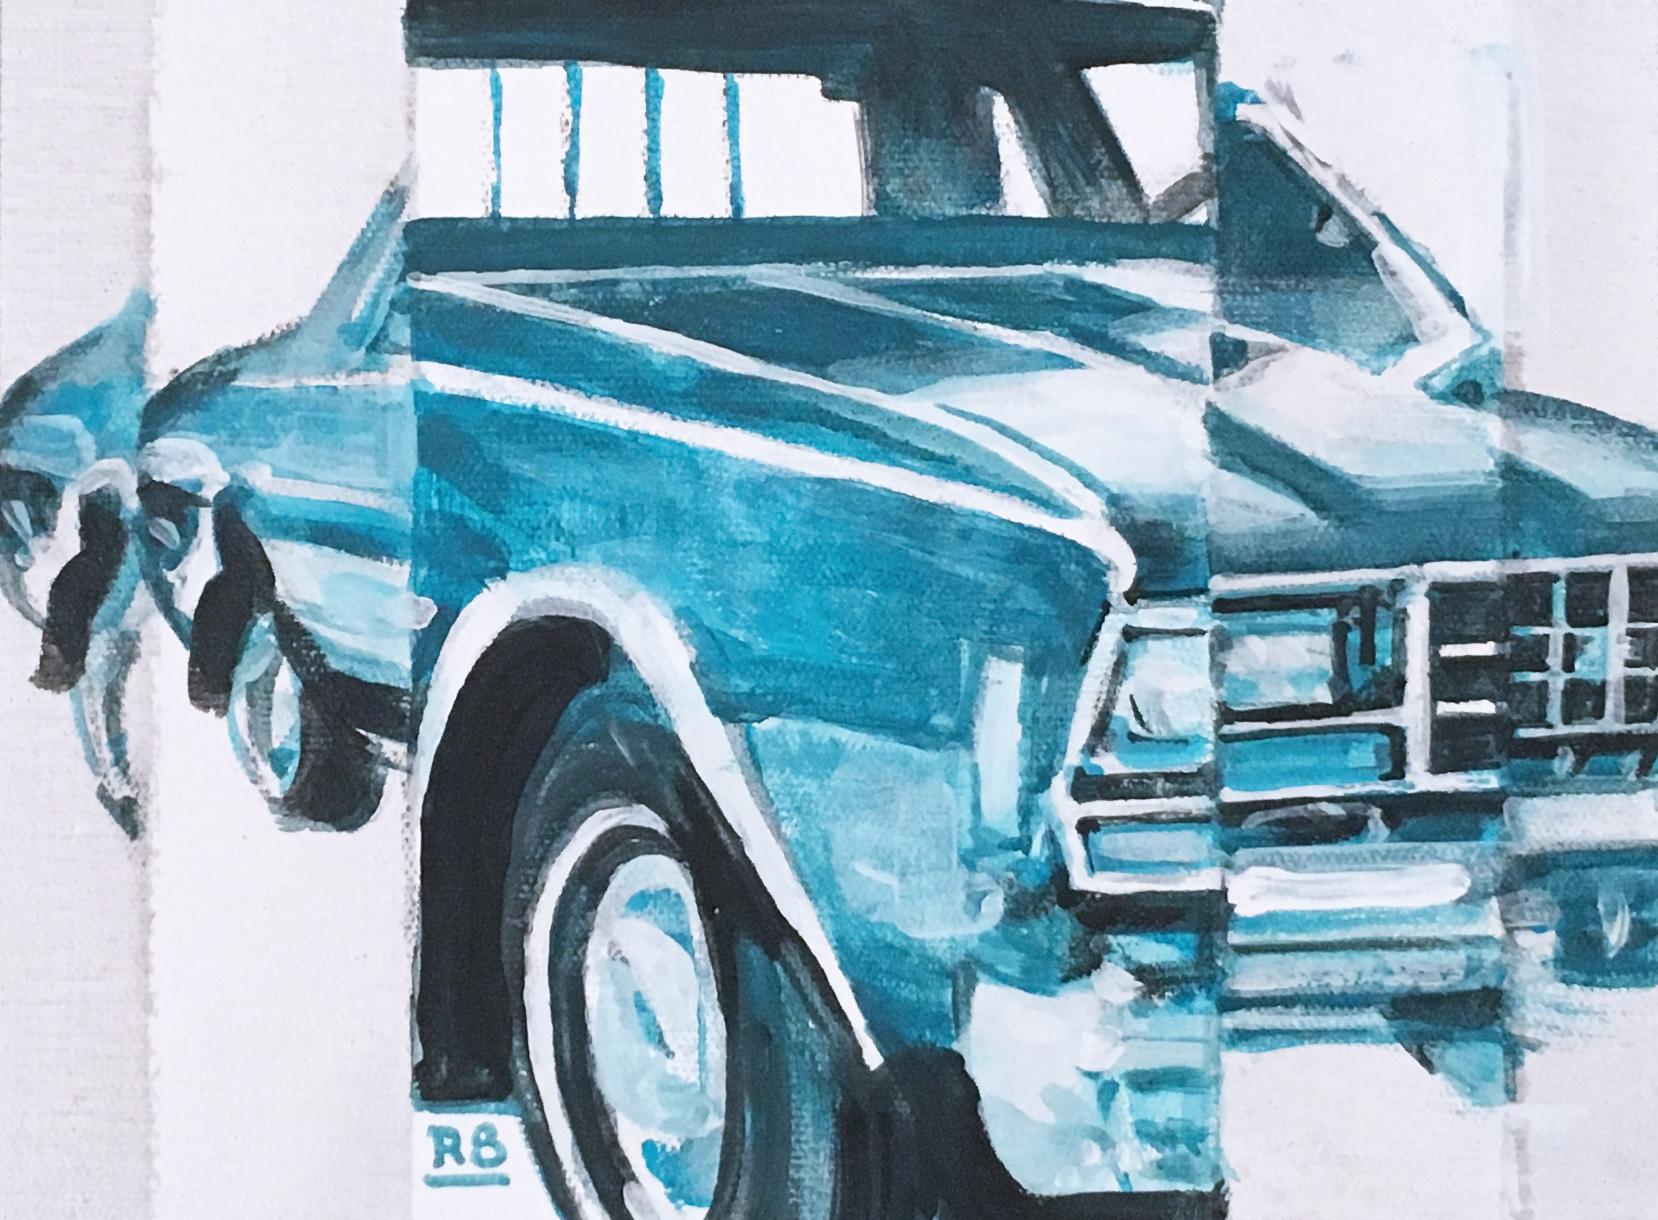 IMPALA, figuratif, acrylique sur toile, turquoise, voiture à muscade Chevy des années 1970  - Gris Figurative Painting par RU8ICON1